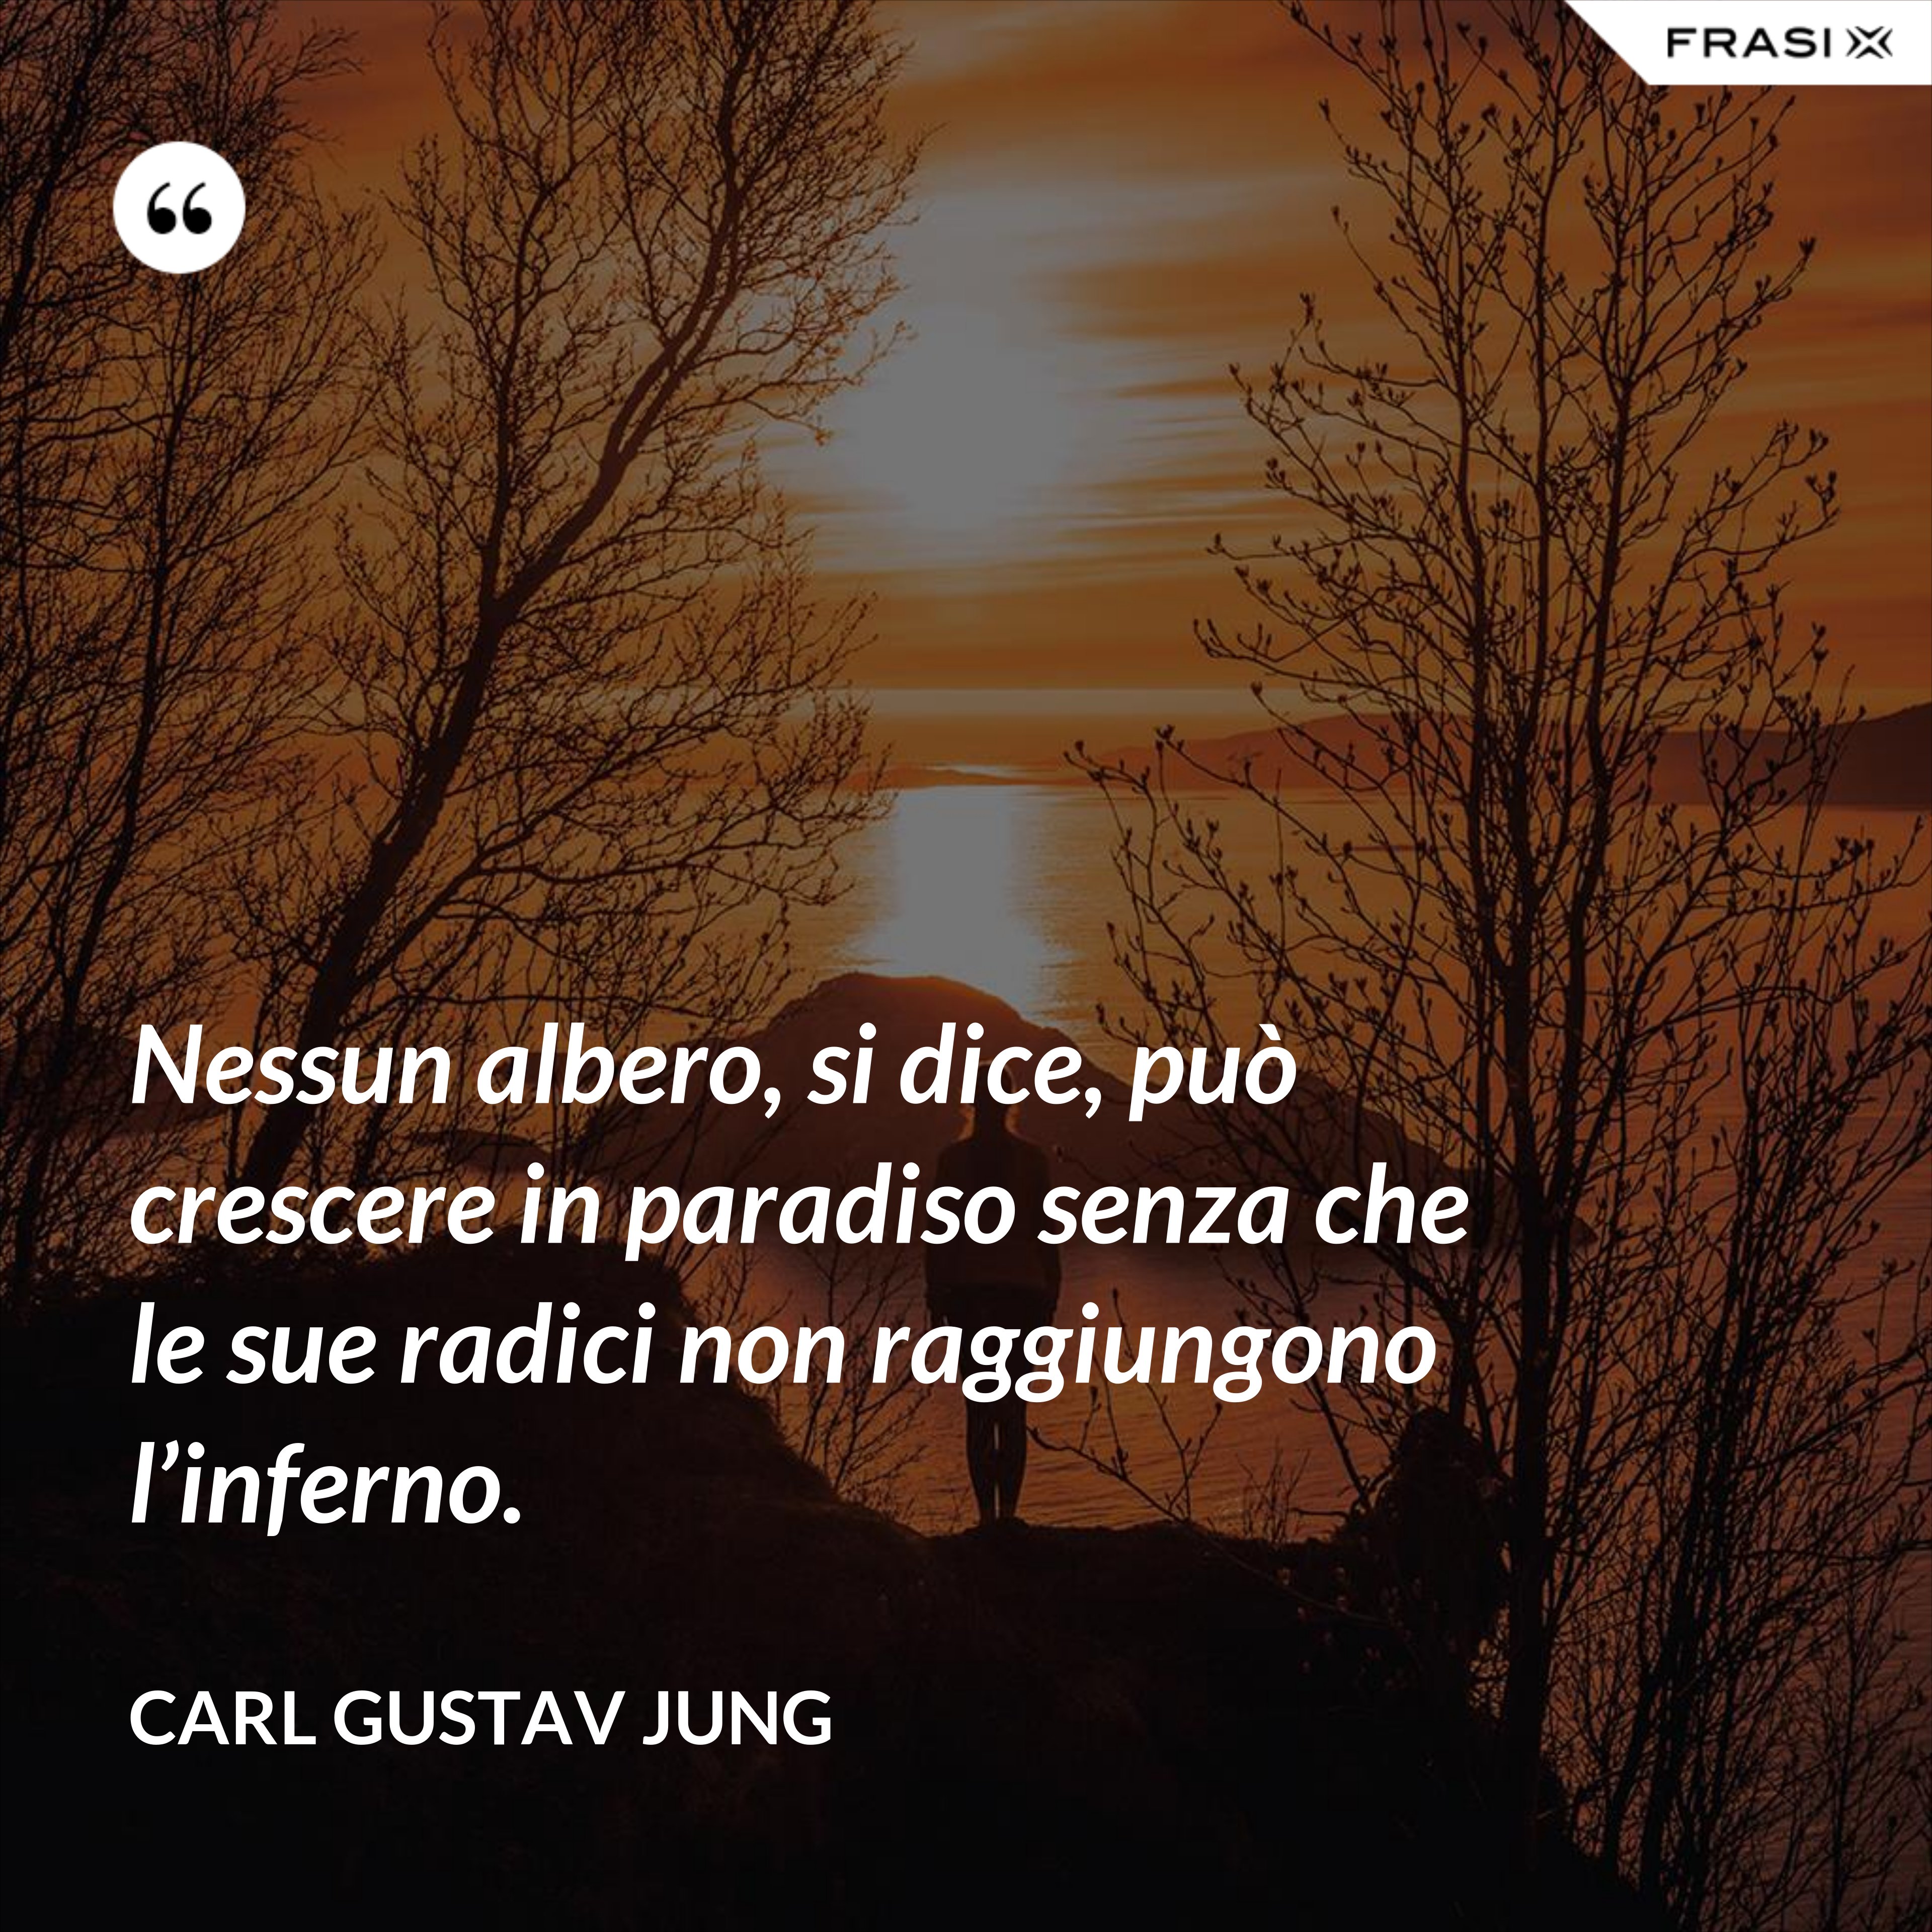 Nessun albero, si dice, può crescere in paradiso senza che le sue radici non raggiungono l’inferno. - Carl Gustav Jung